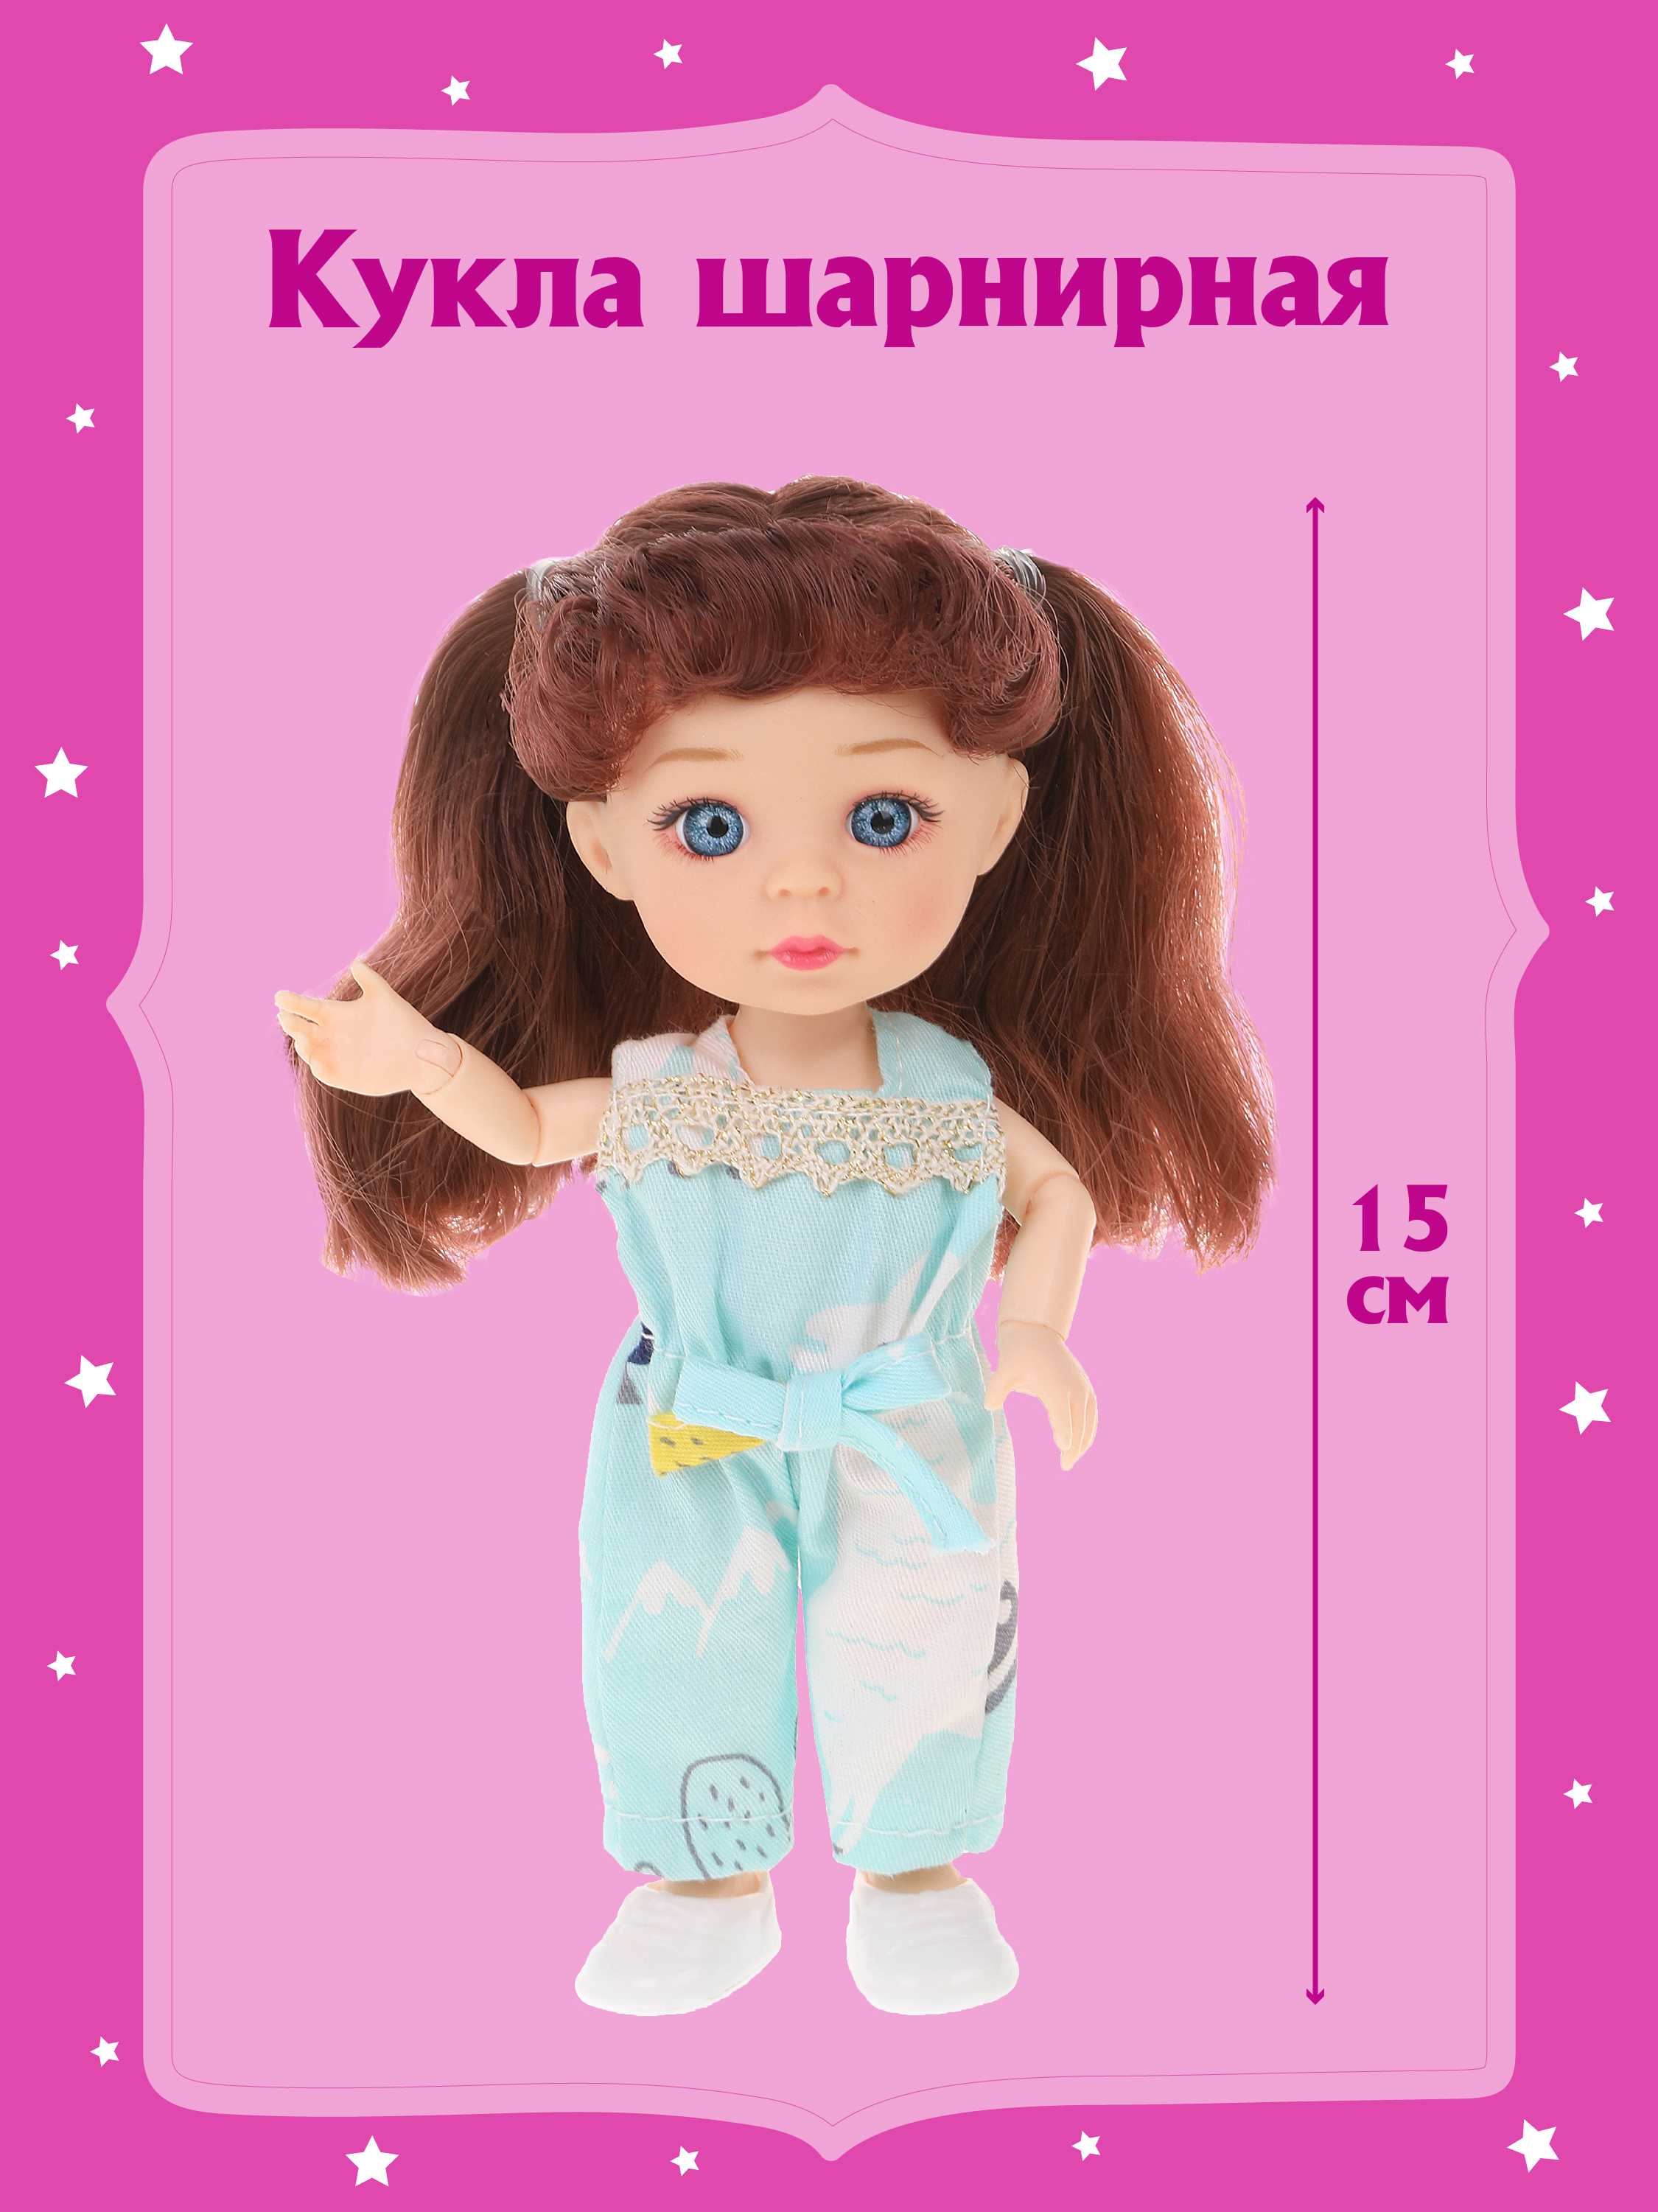 Шарнирная кукла для девочки Наша игрушка 15 см, 803603